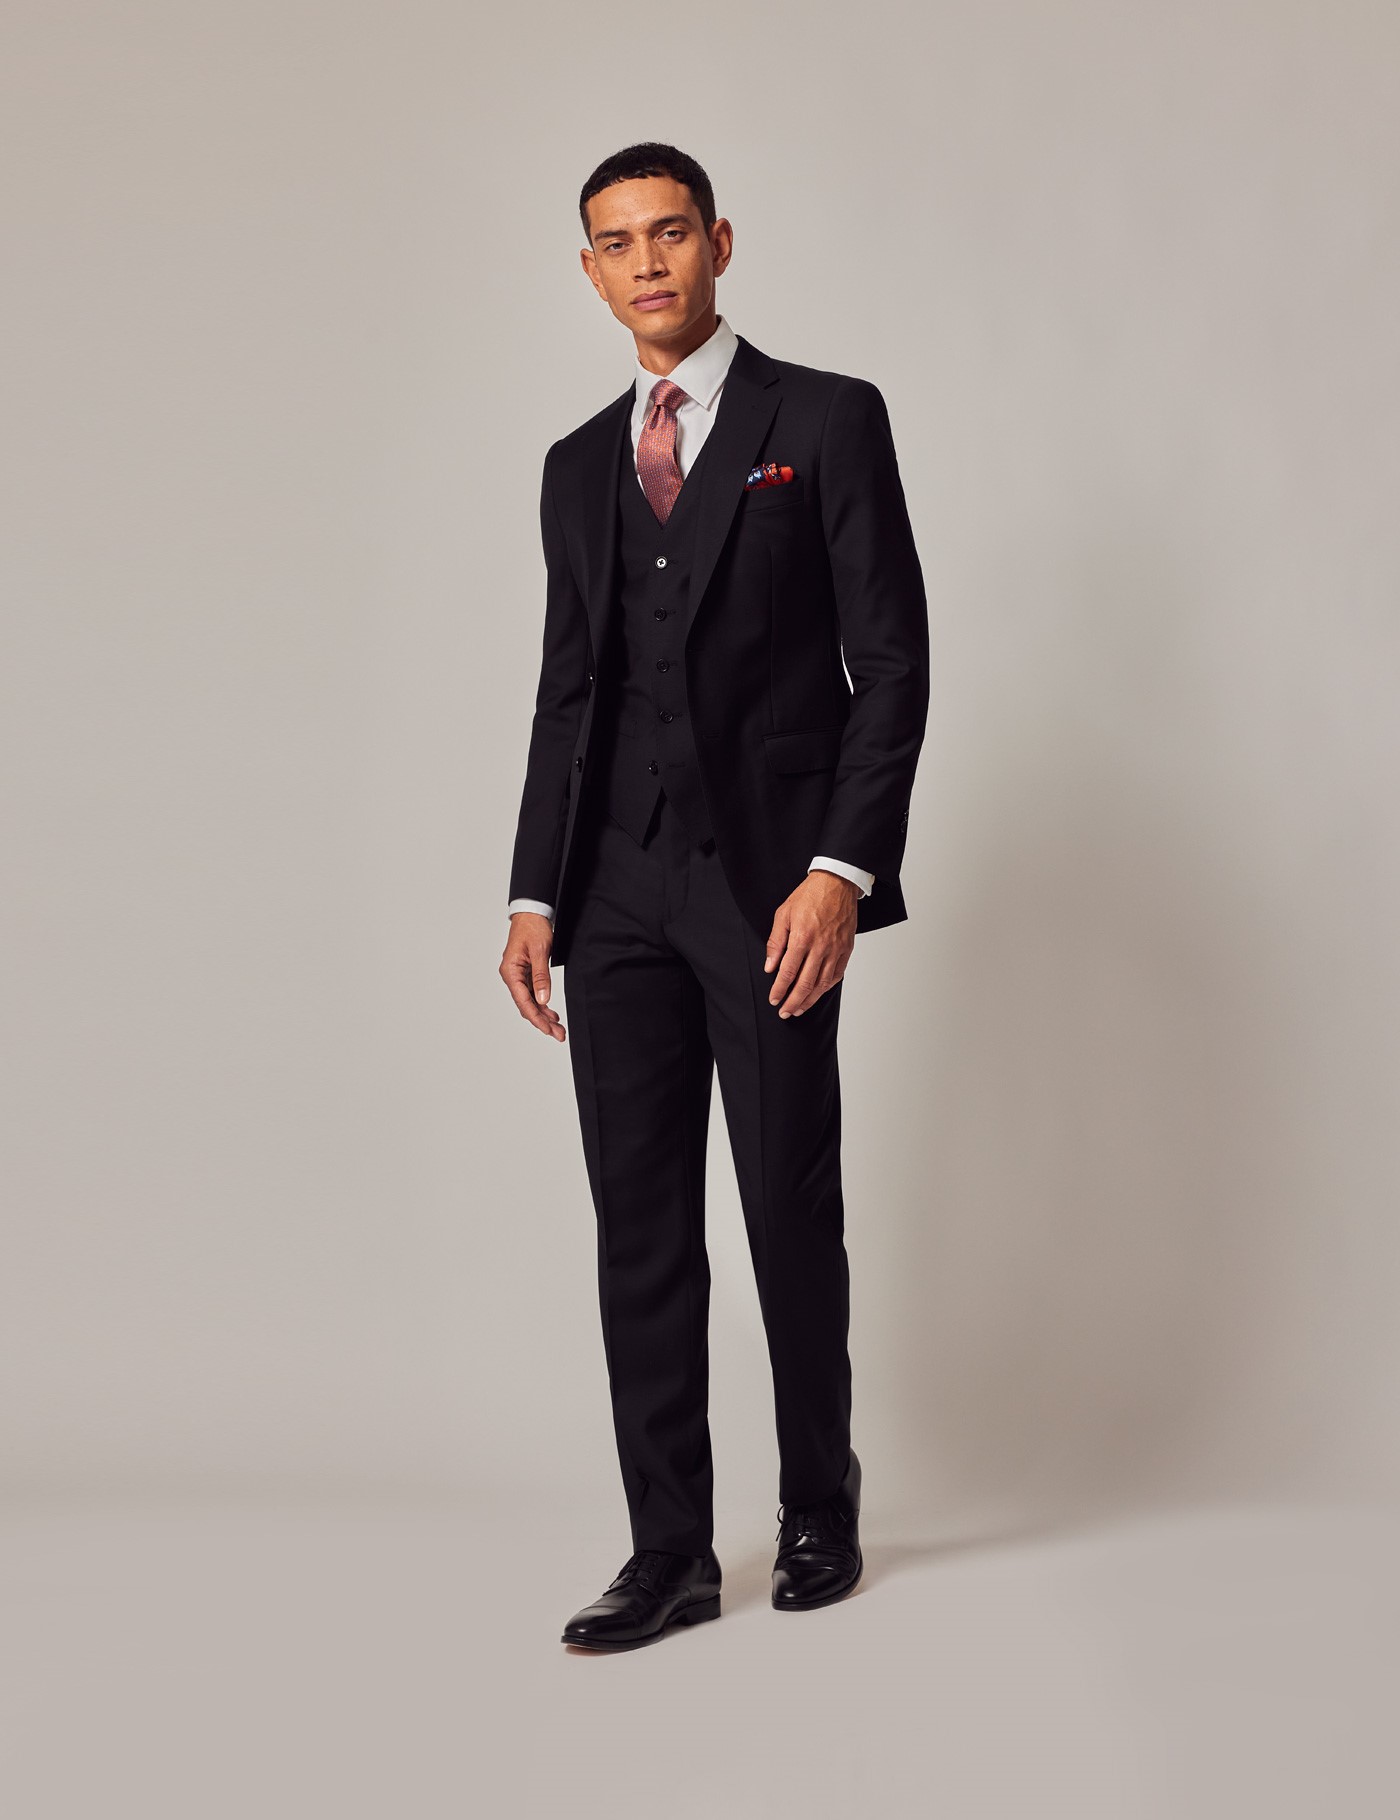 Black Suit PNG Image  Suits, Black suits, Black three piece suit